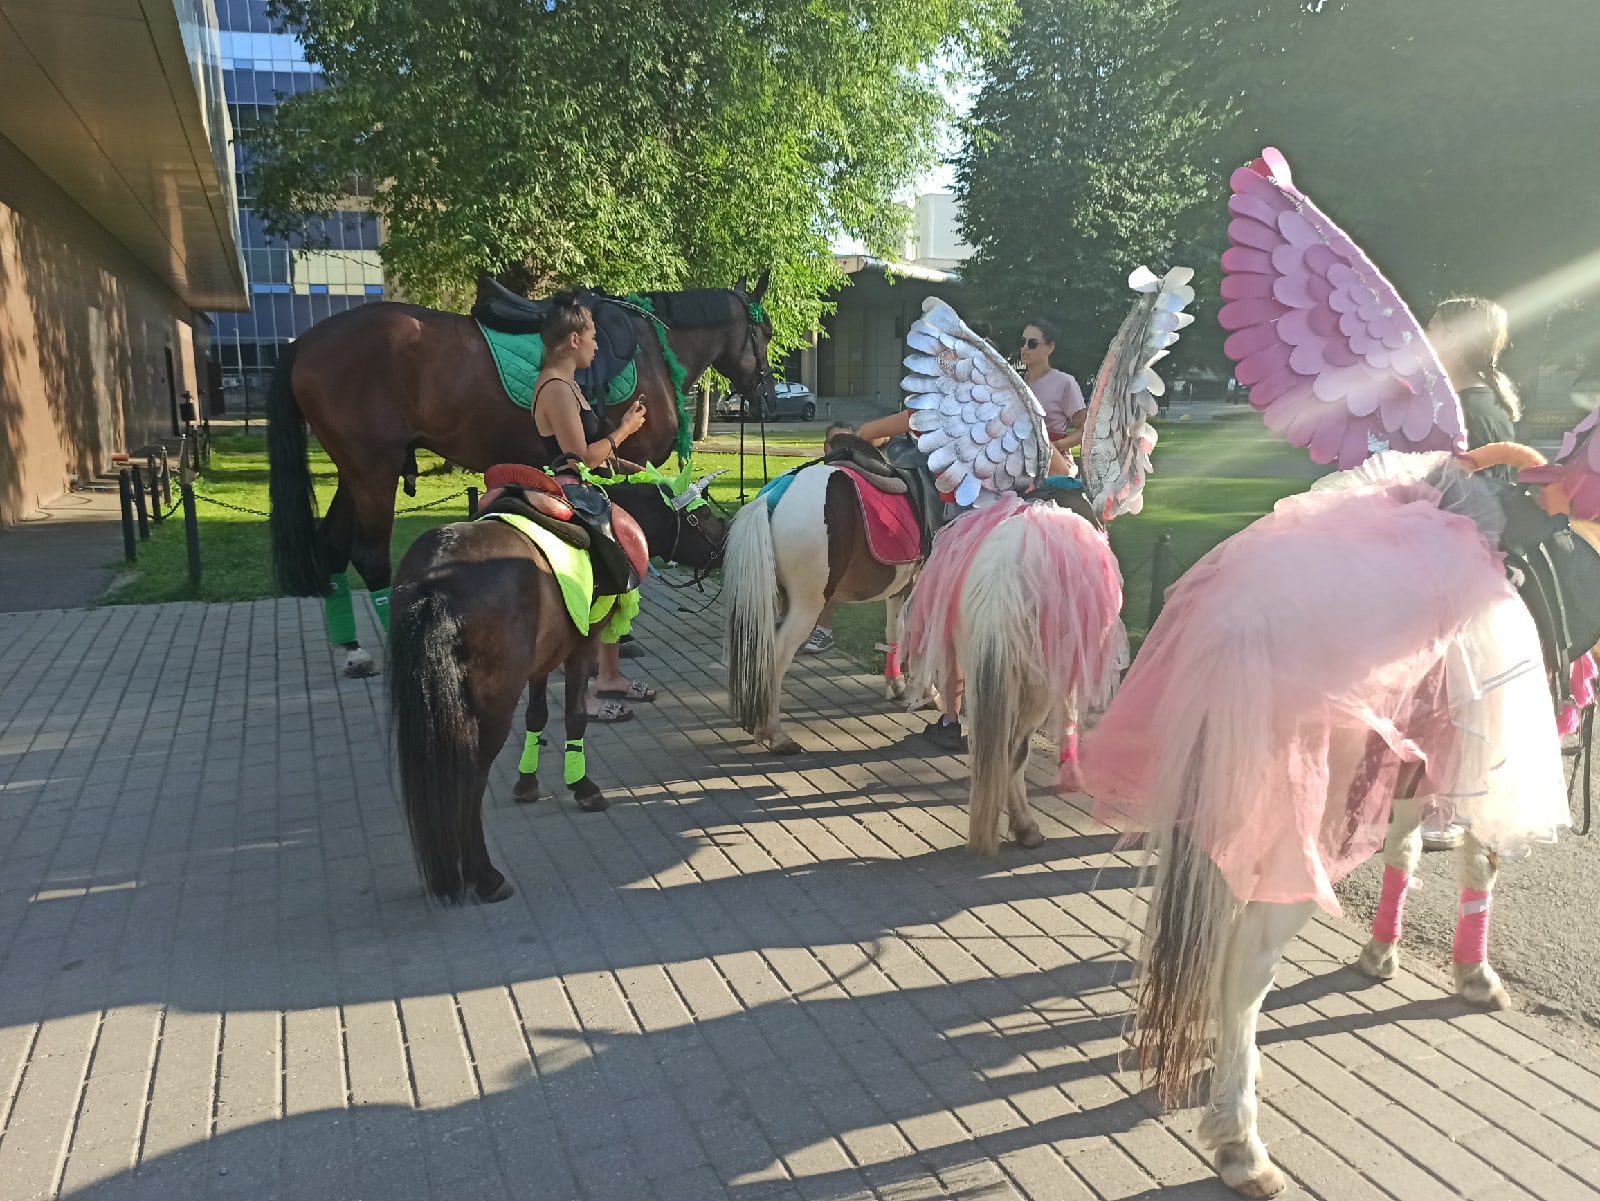 "Мучают на жаре": реакция ярославцев на сообщение о падении ребенка с лошади в Даманском парке